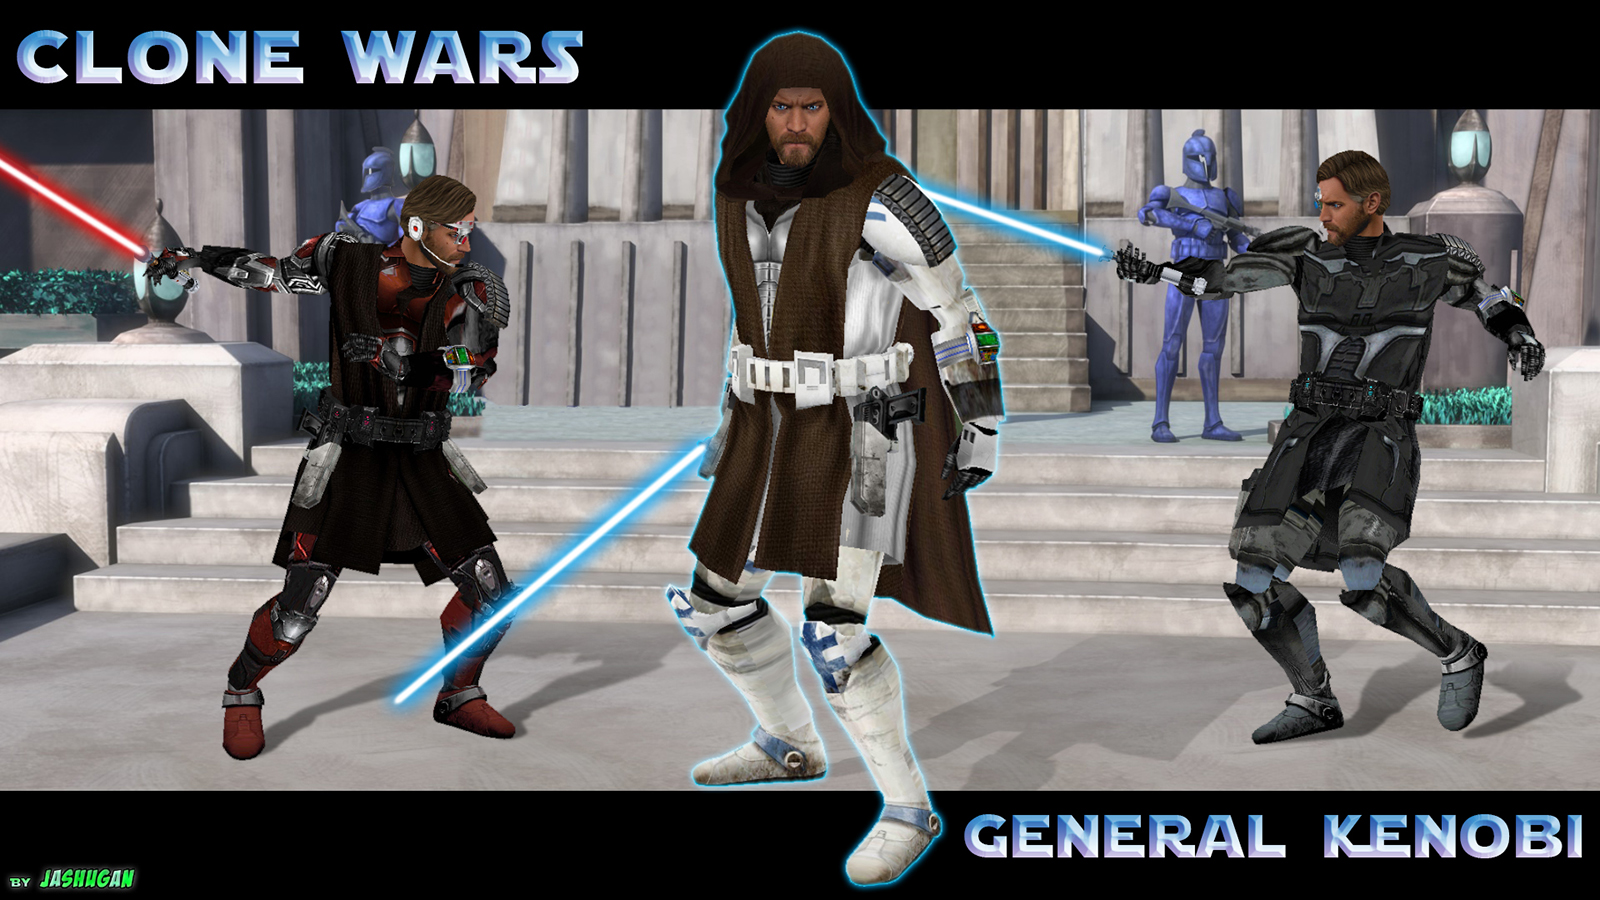 More information about "Clone Wars General Kenobi"